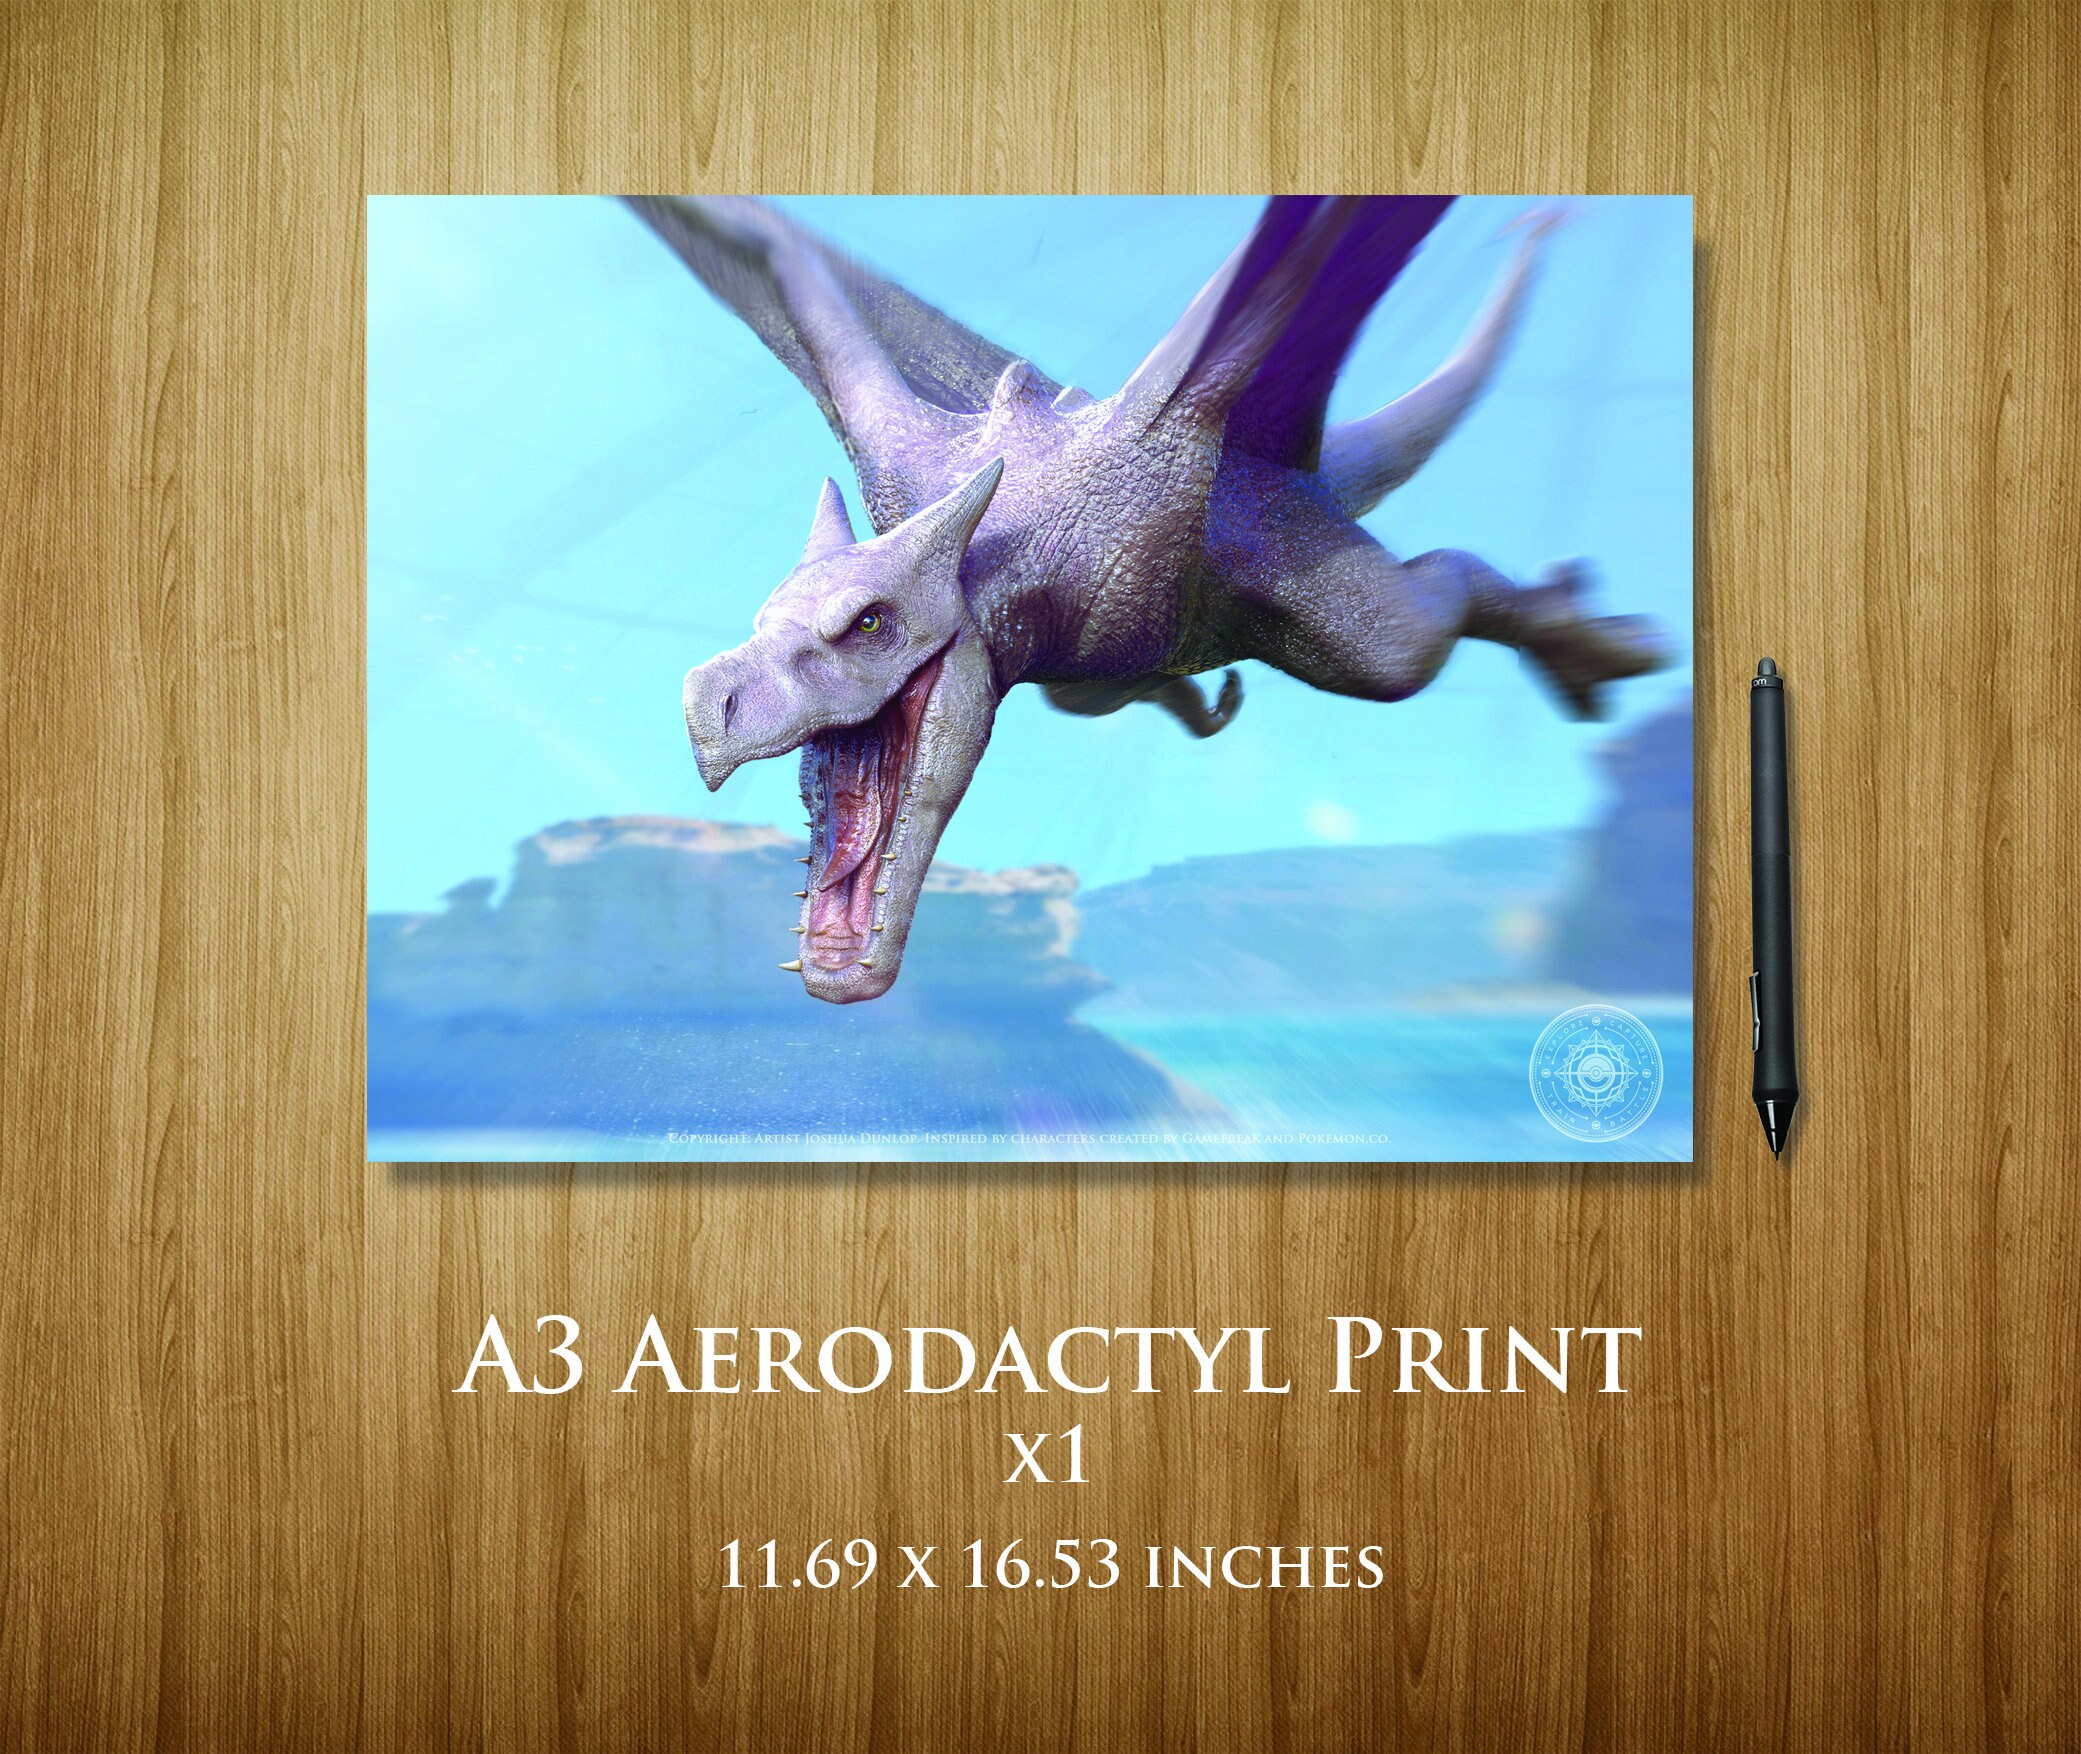 Aerodactyl Art -  Australia